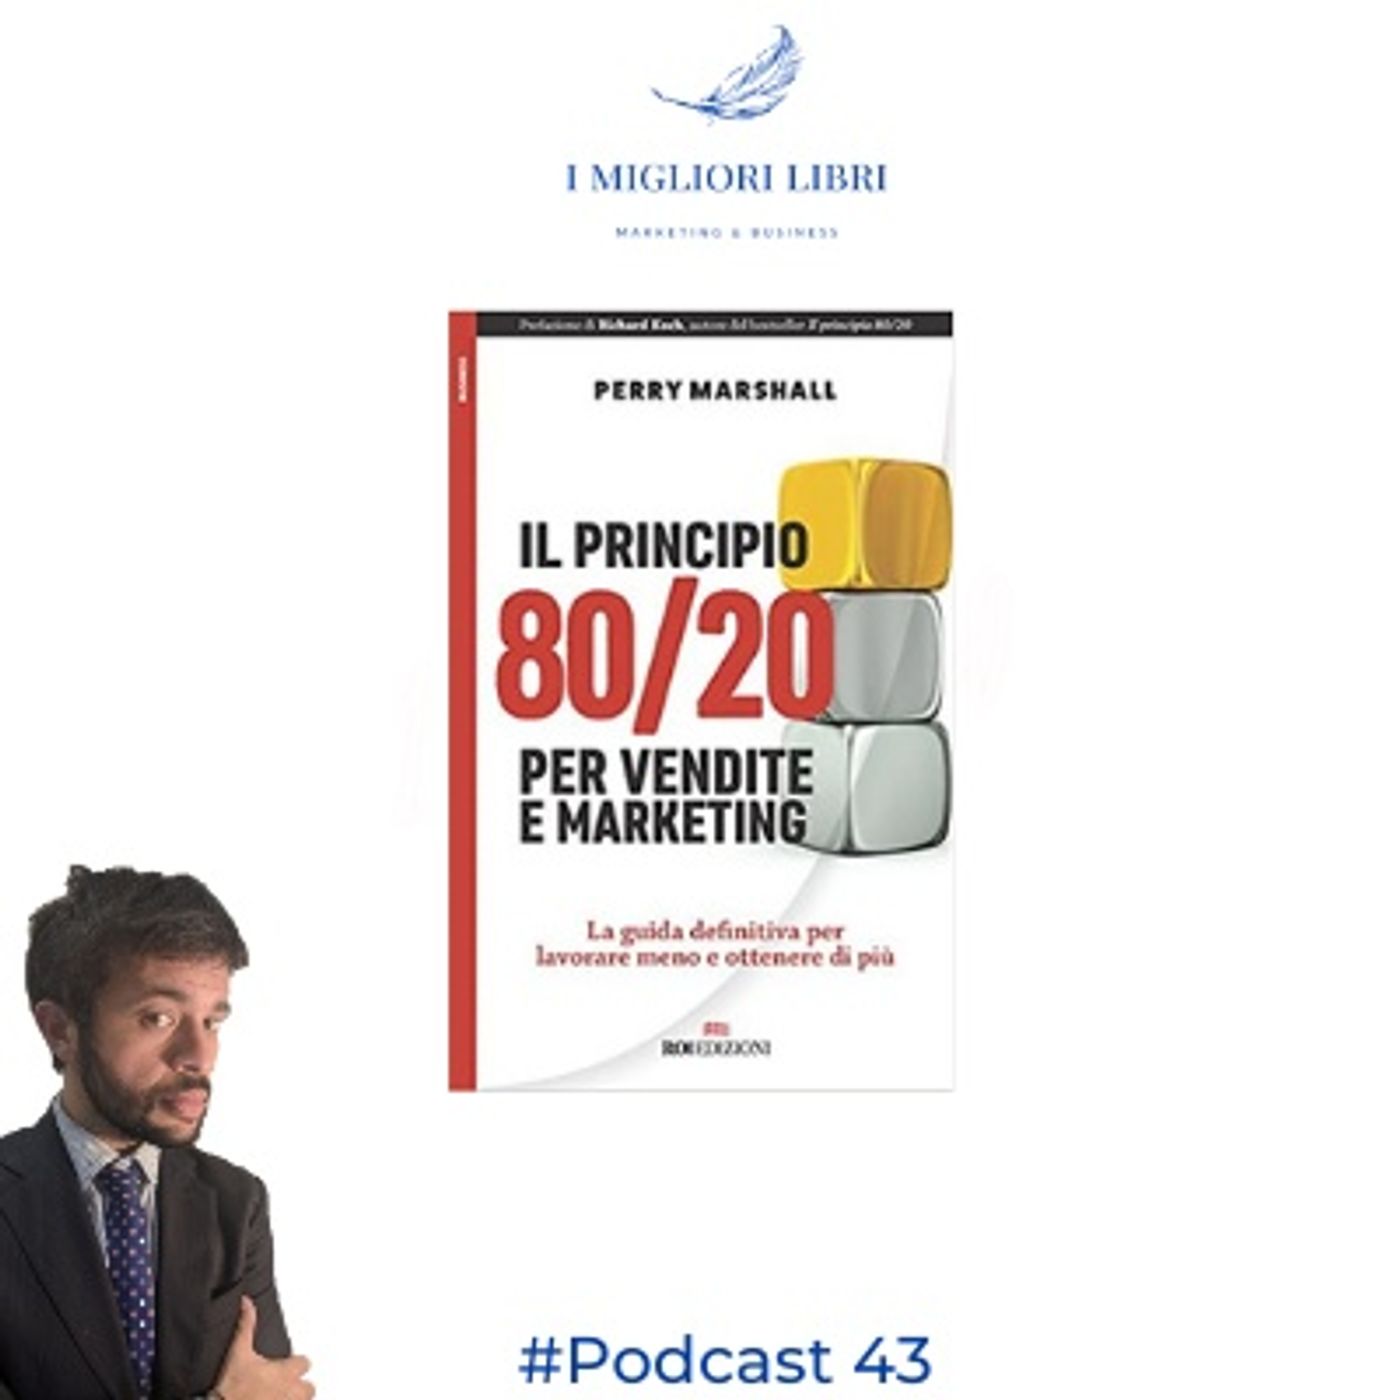 Episodio 43  " Il principio 80/20 per vendite e marketing" di P.Marshall - I Migliori Libri Marketing & Business